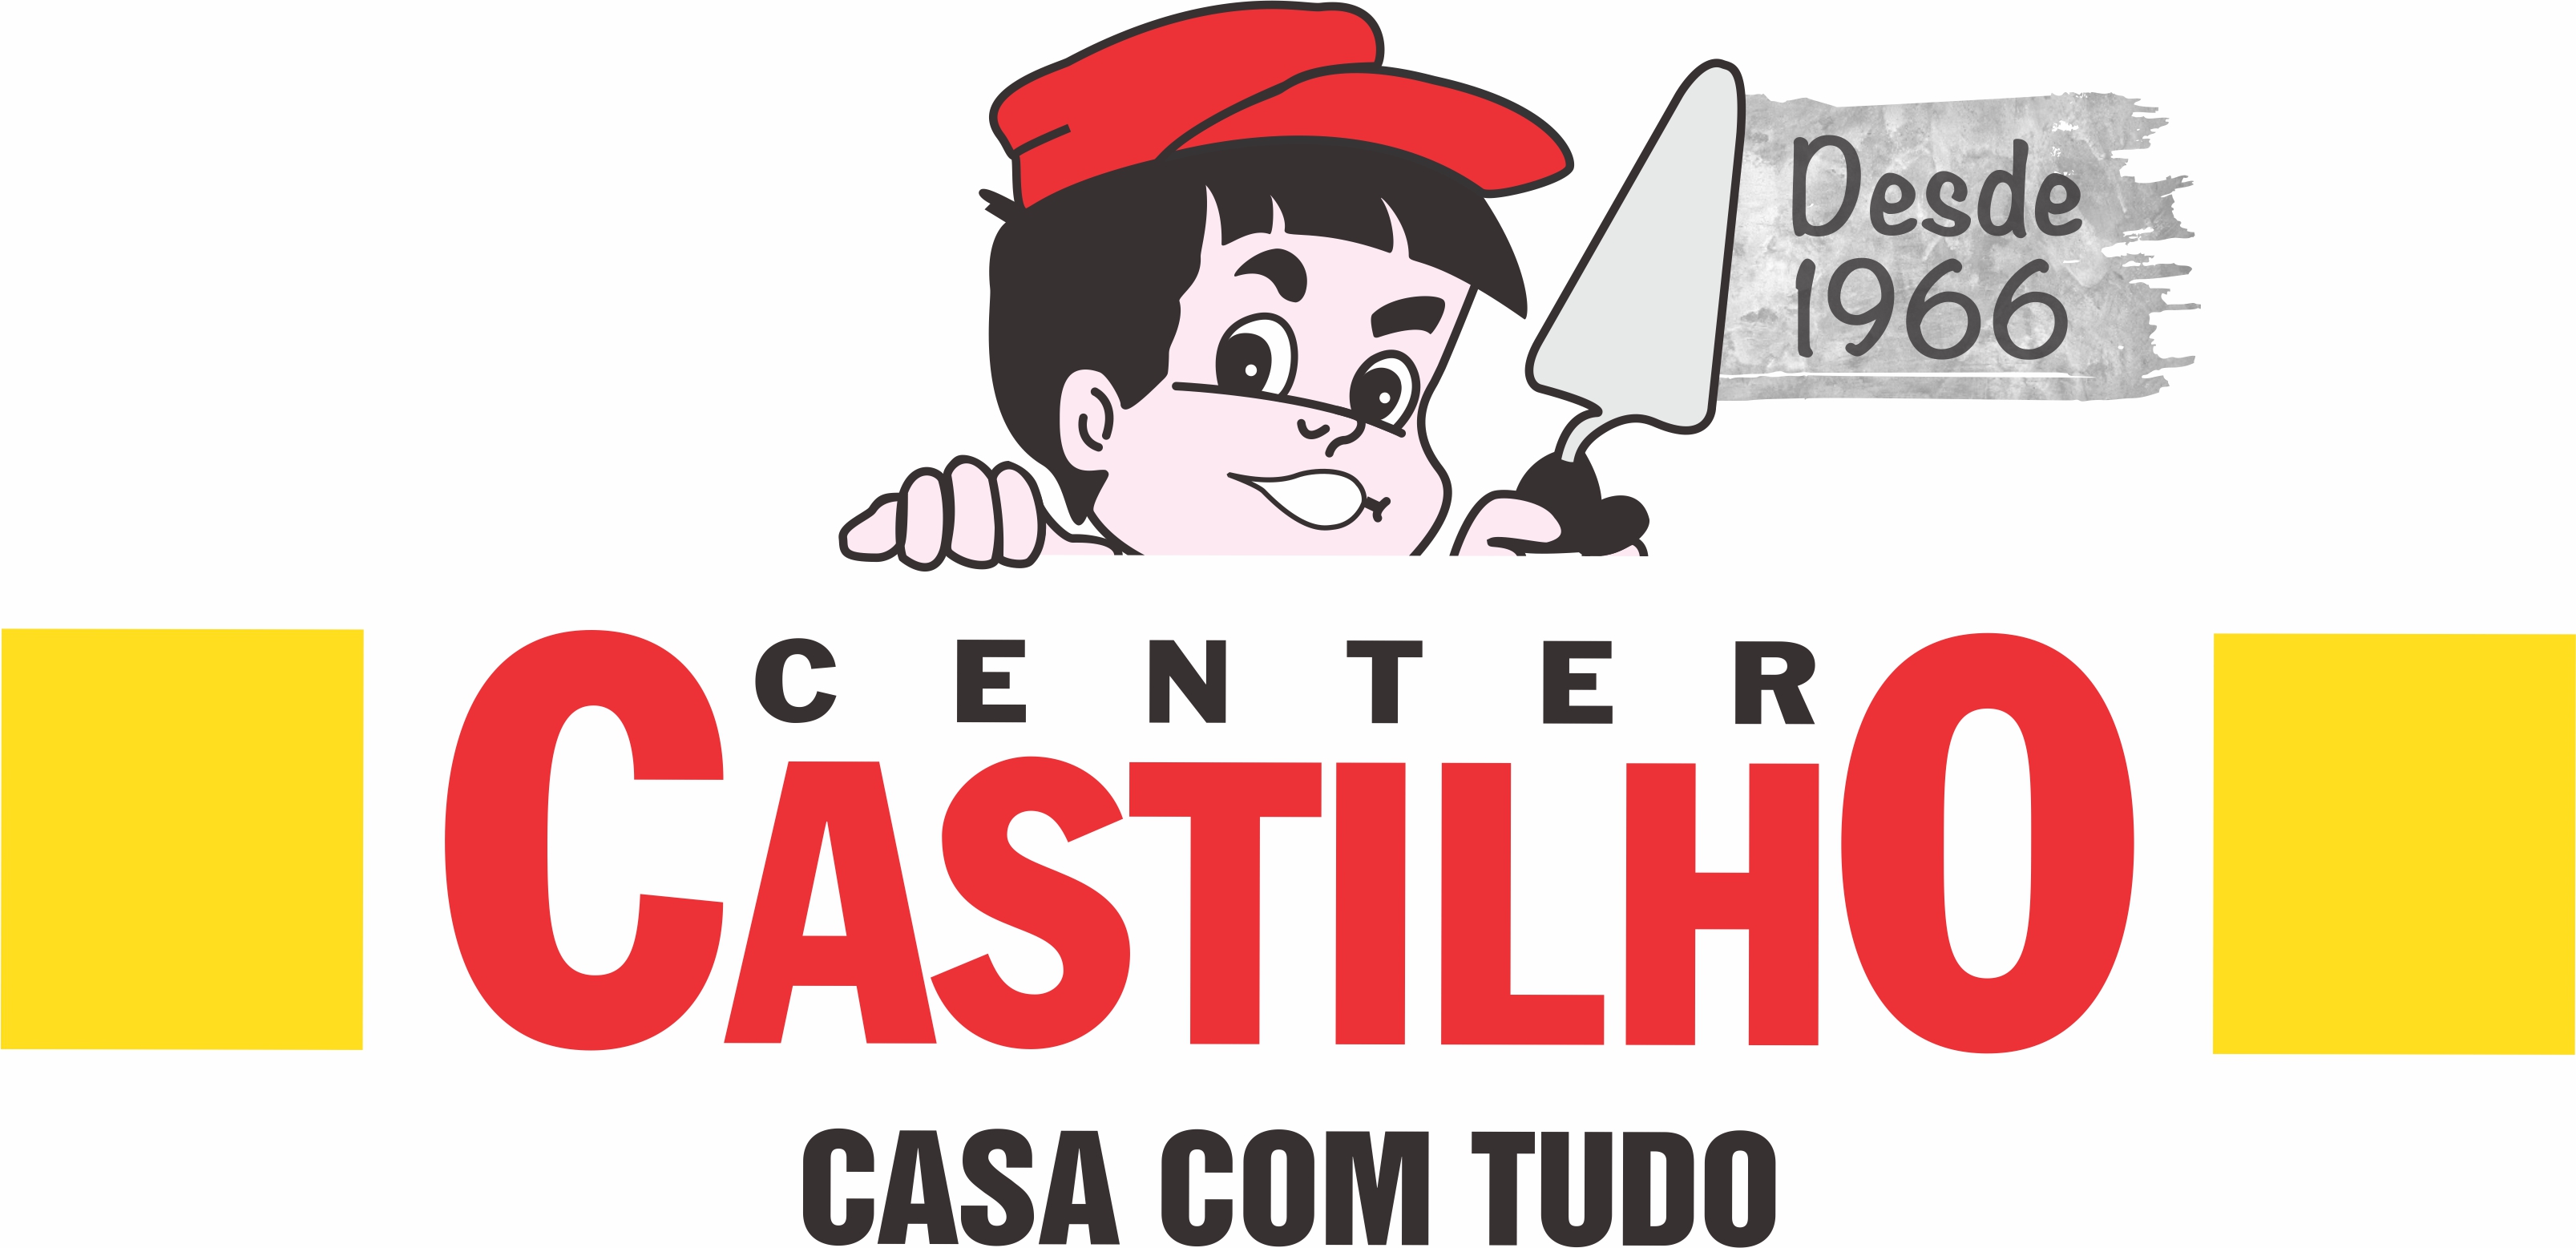 CENTER CASTILHO - Mogi das Cruzes, SP